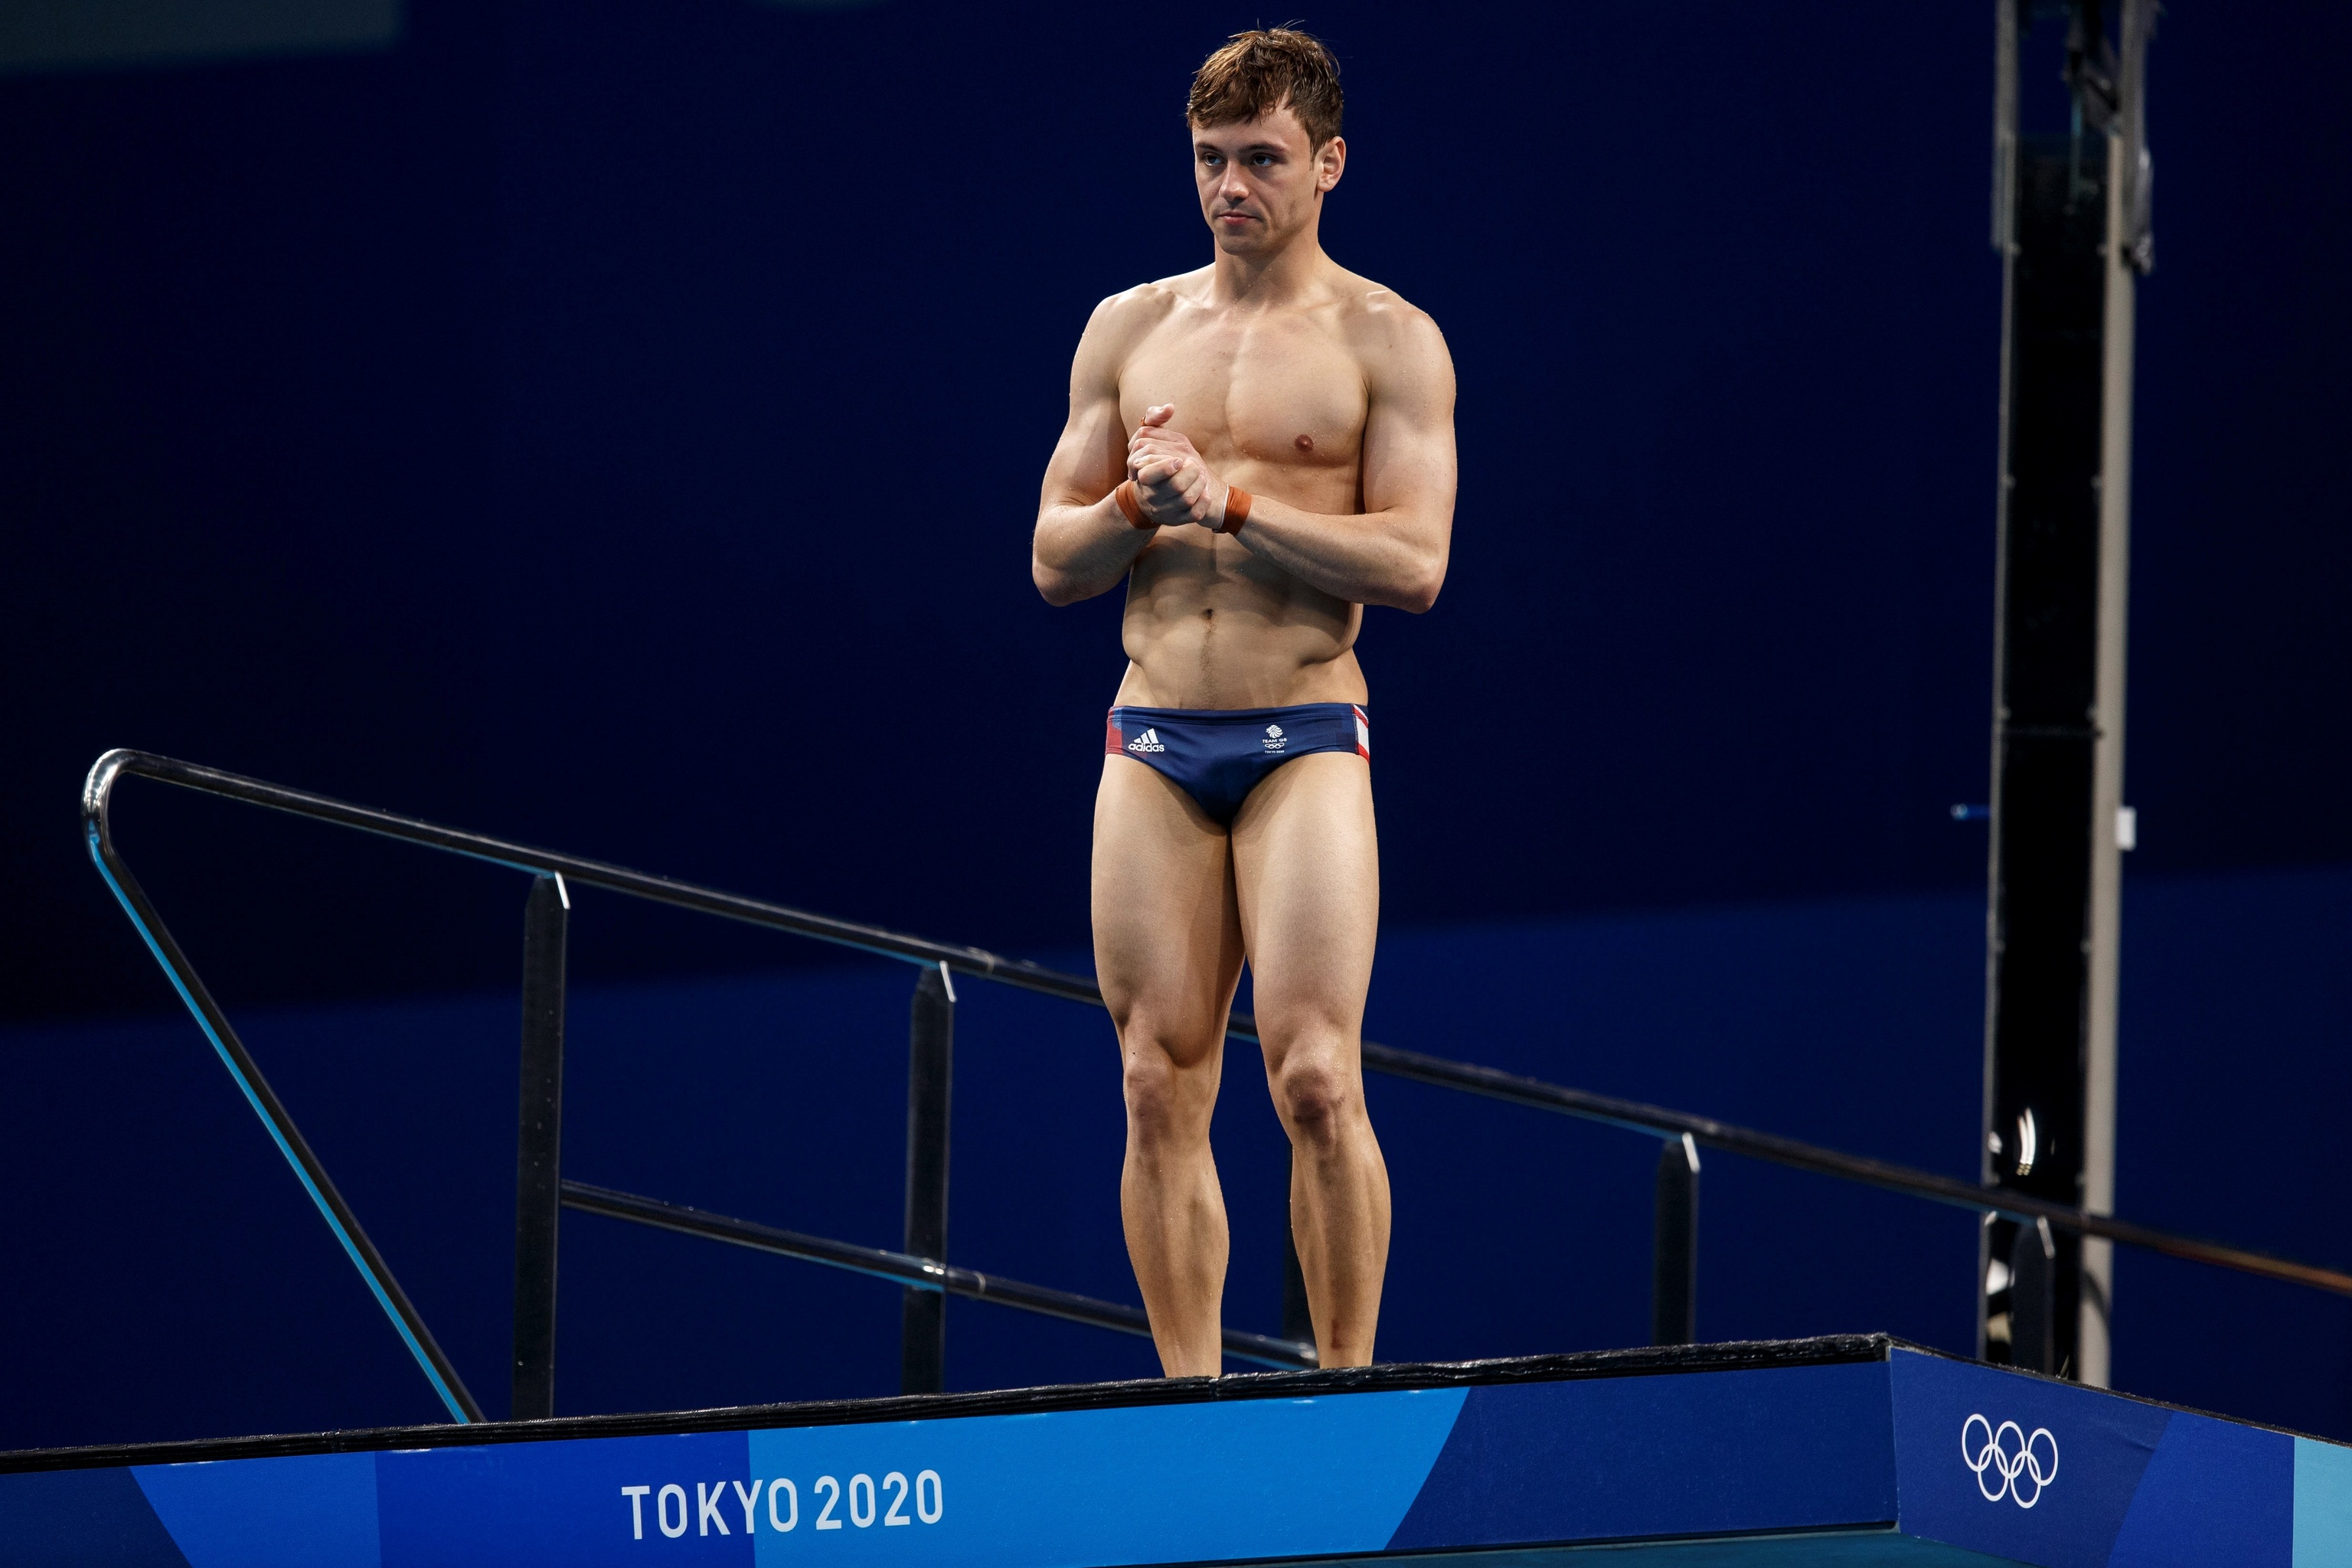 Distribución Distante bruscamente Tom Daley, tras ganar el oro en salto de trampolín: "Estoy orgulloso de  decir que soy gay y campeón olímpico" | Juegos Olímpicos